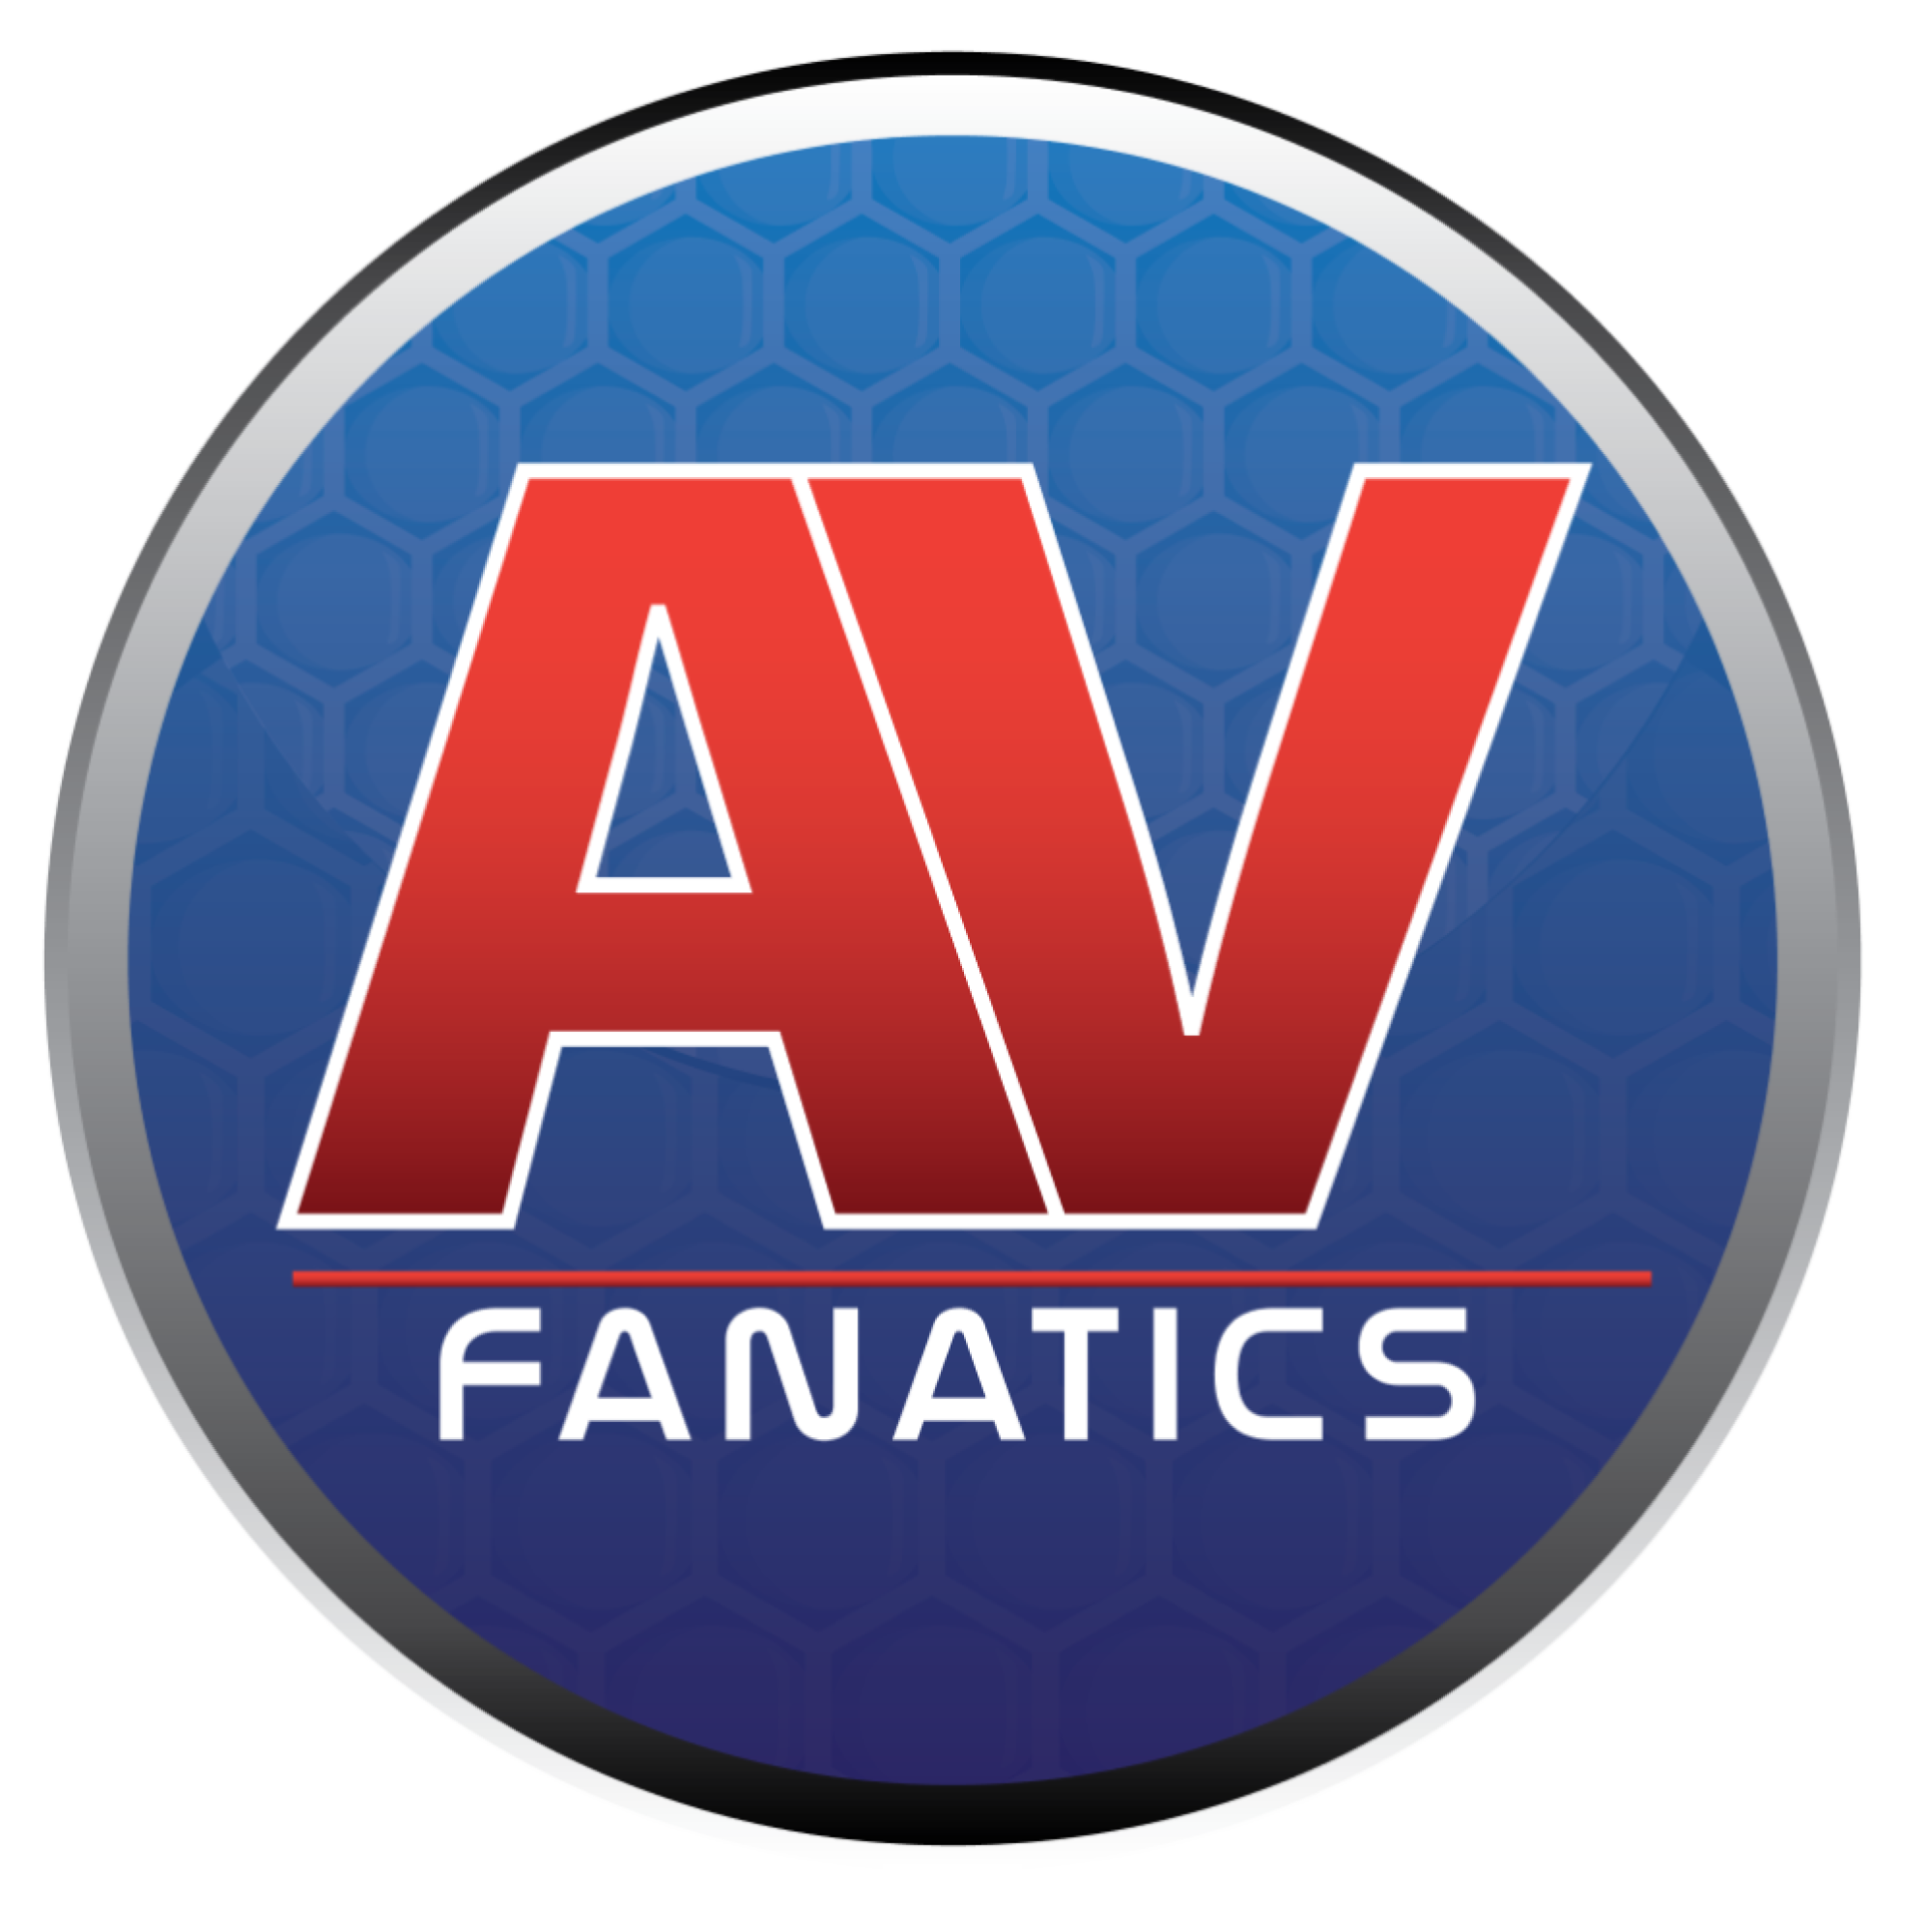 AV Fanatics Ltd